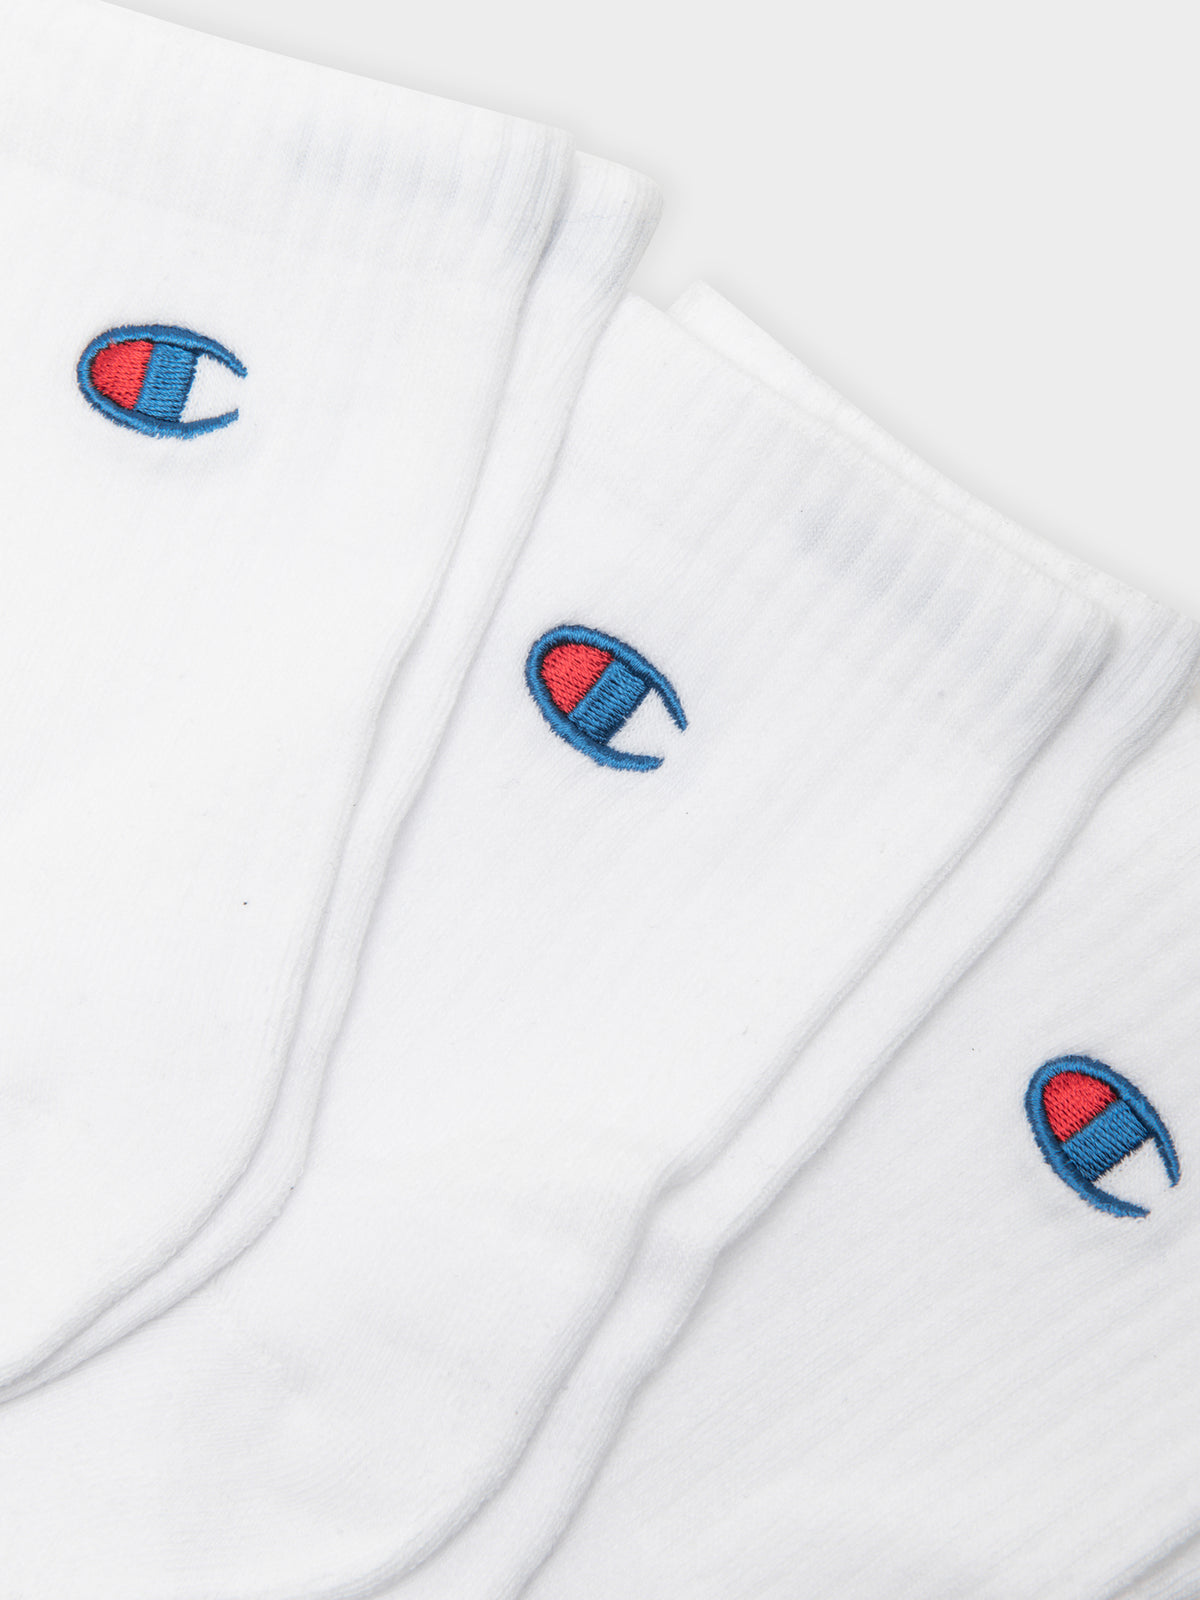 3 Pairs of Life Quarter-Length Crew Socks in White